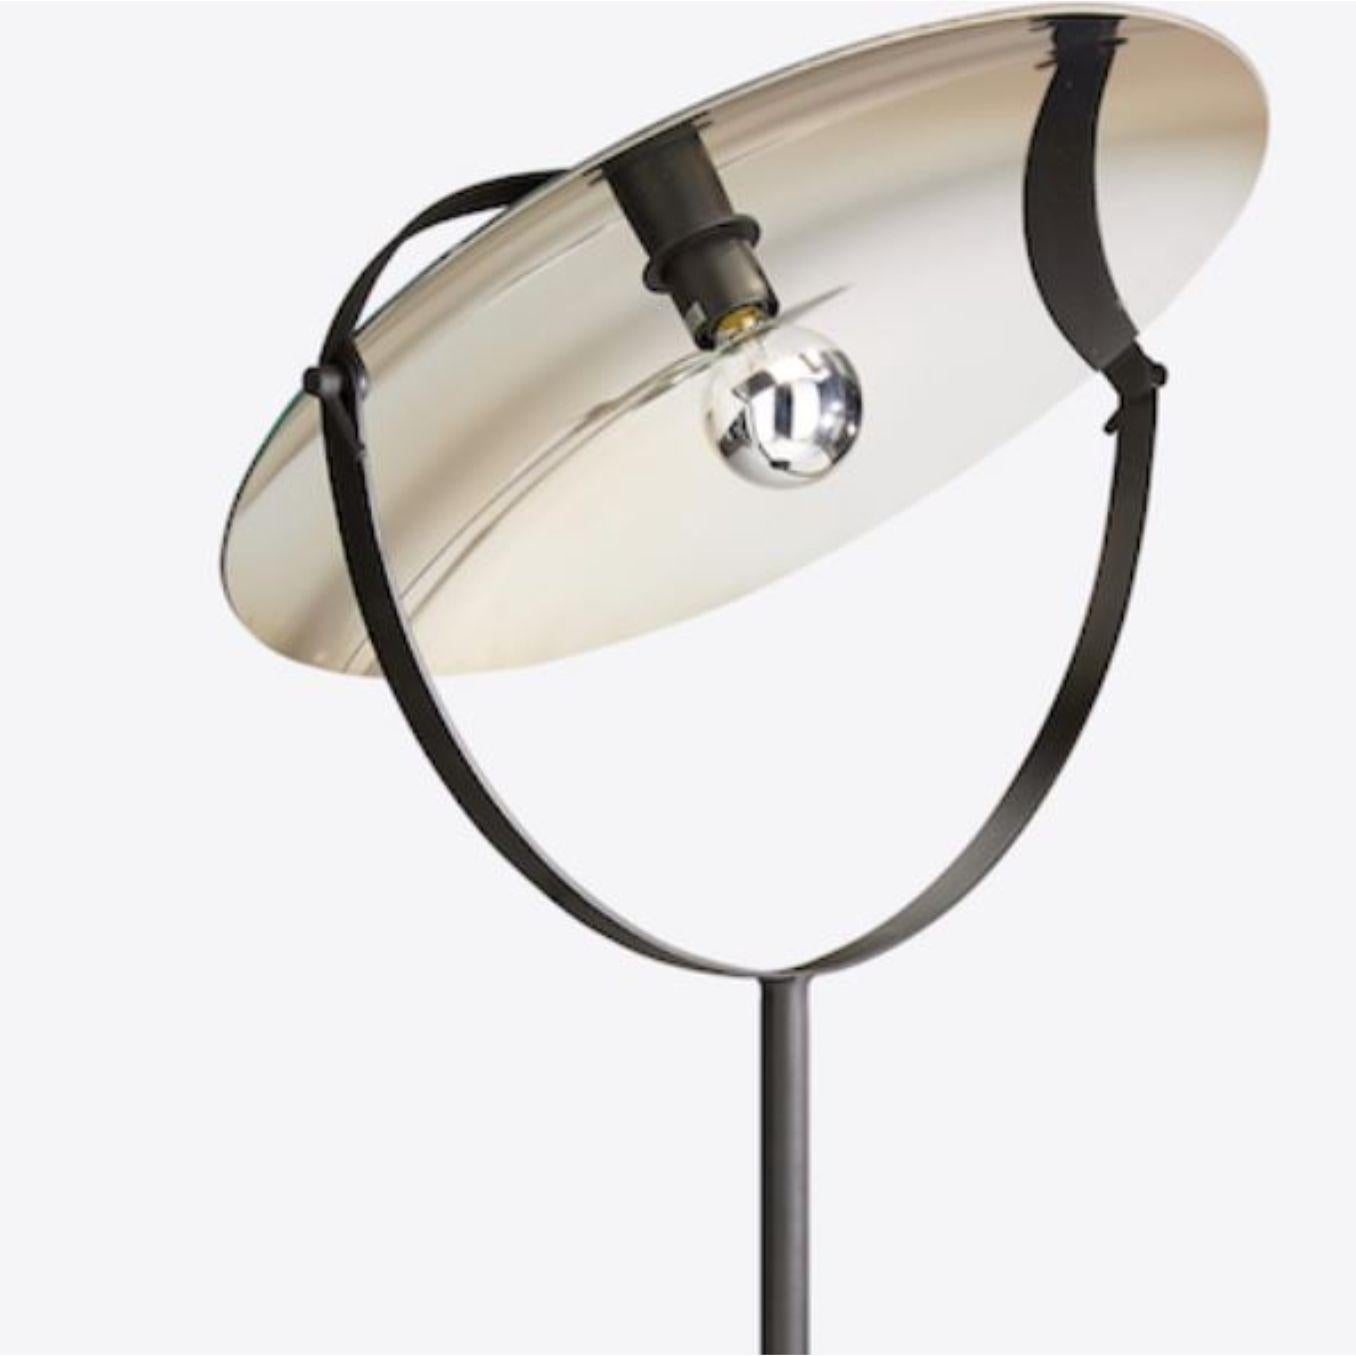 Modern Cyclope Floor Lamp by Radar For Sale